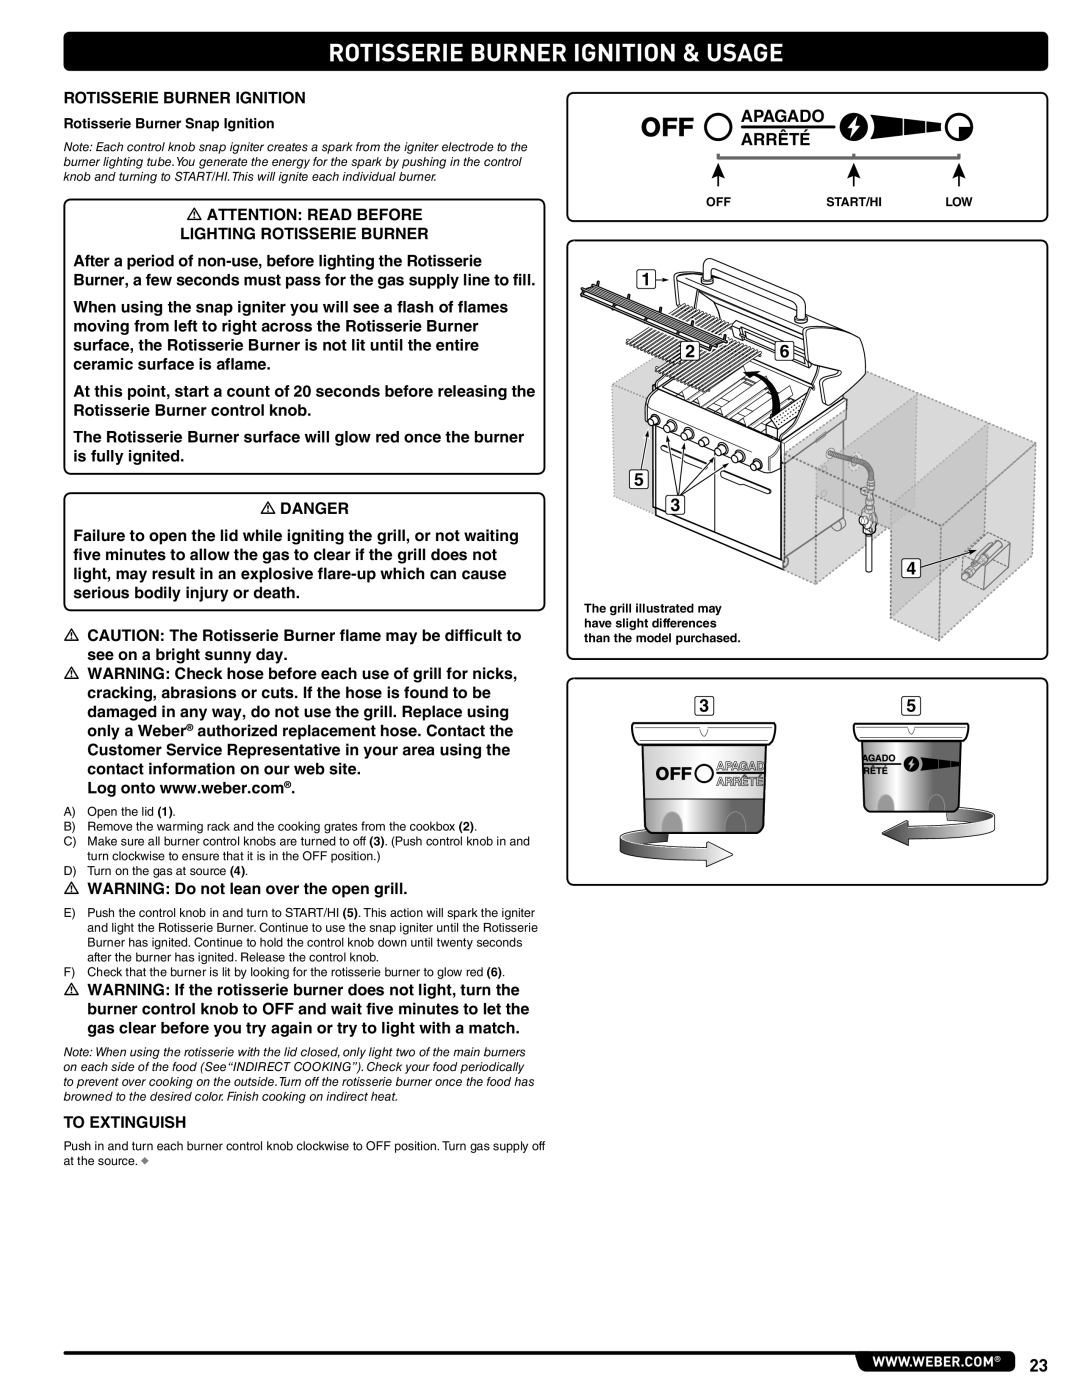 Weber 56576 manual Rotisserie Burner Ignition & Usage, Apagado Arrêté, Rotisserie Burner Snap Ignition 